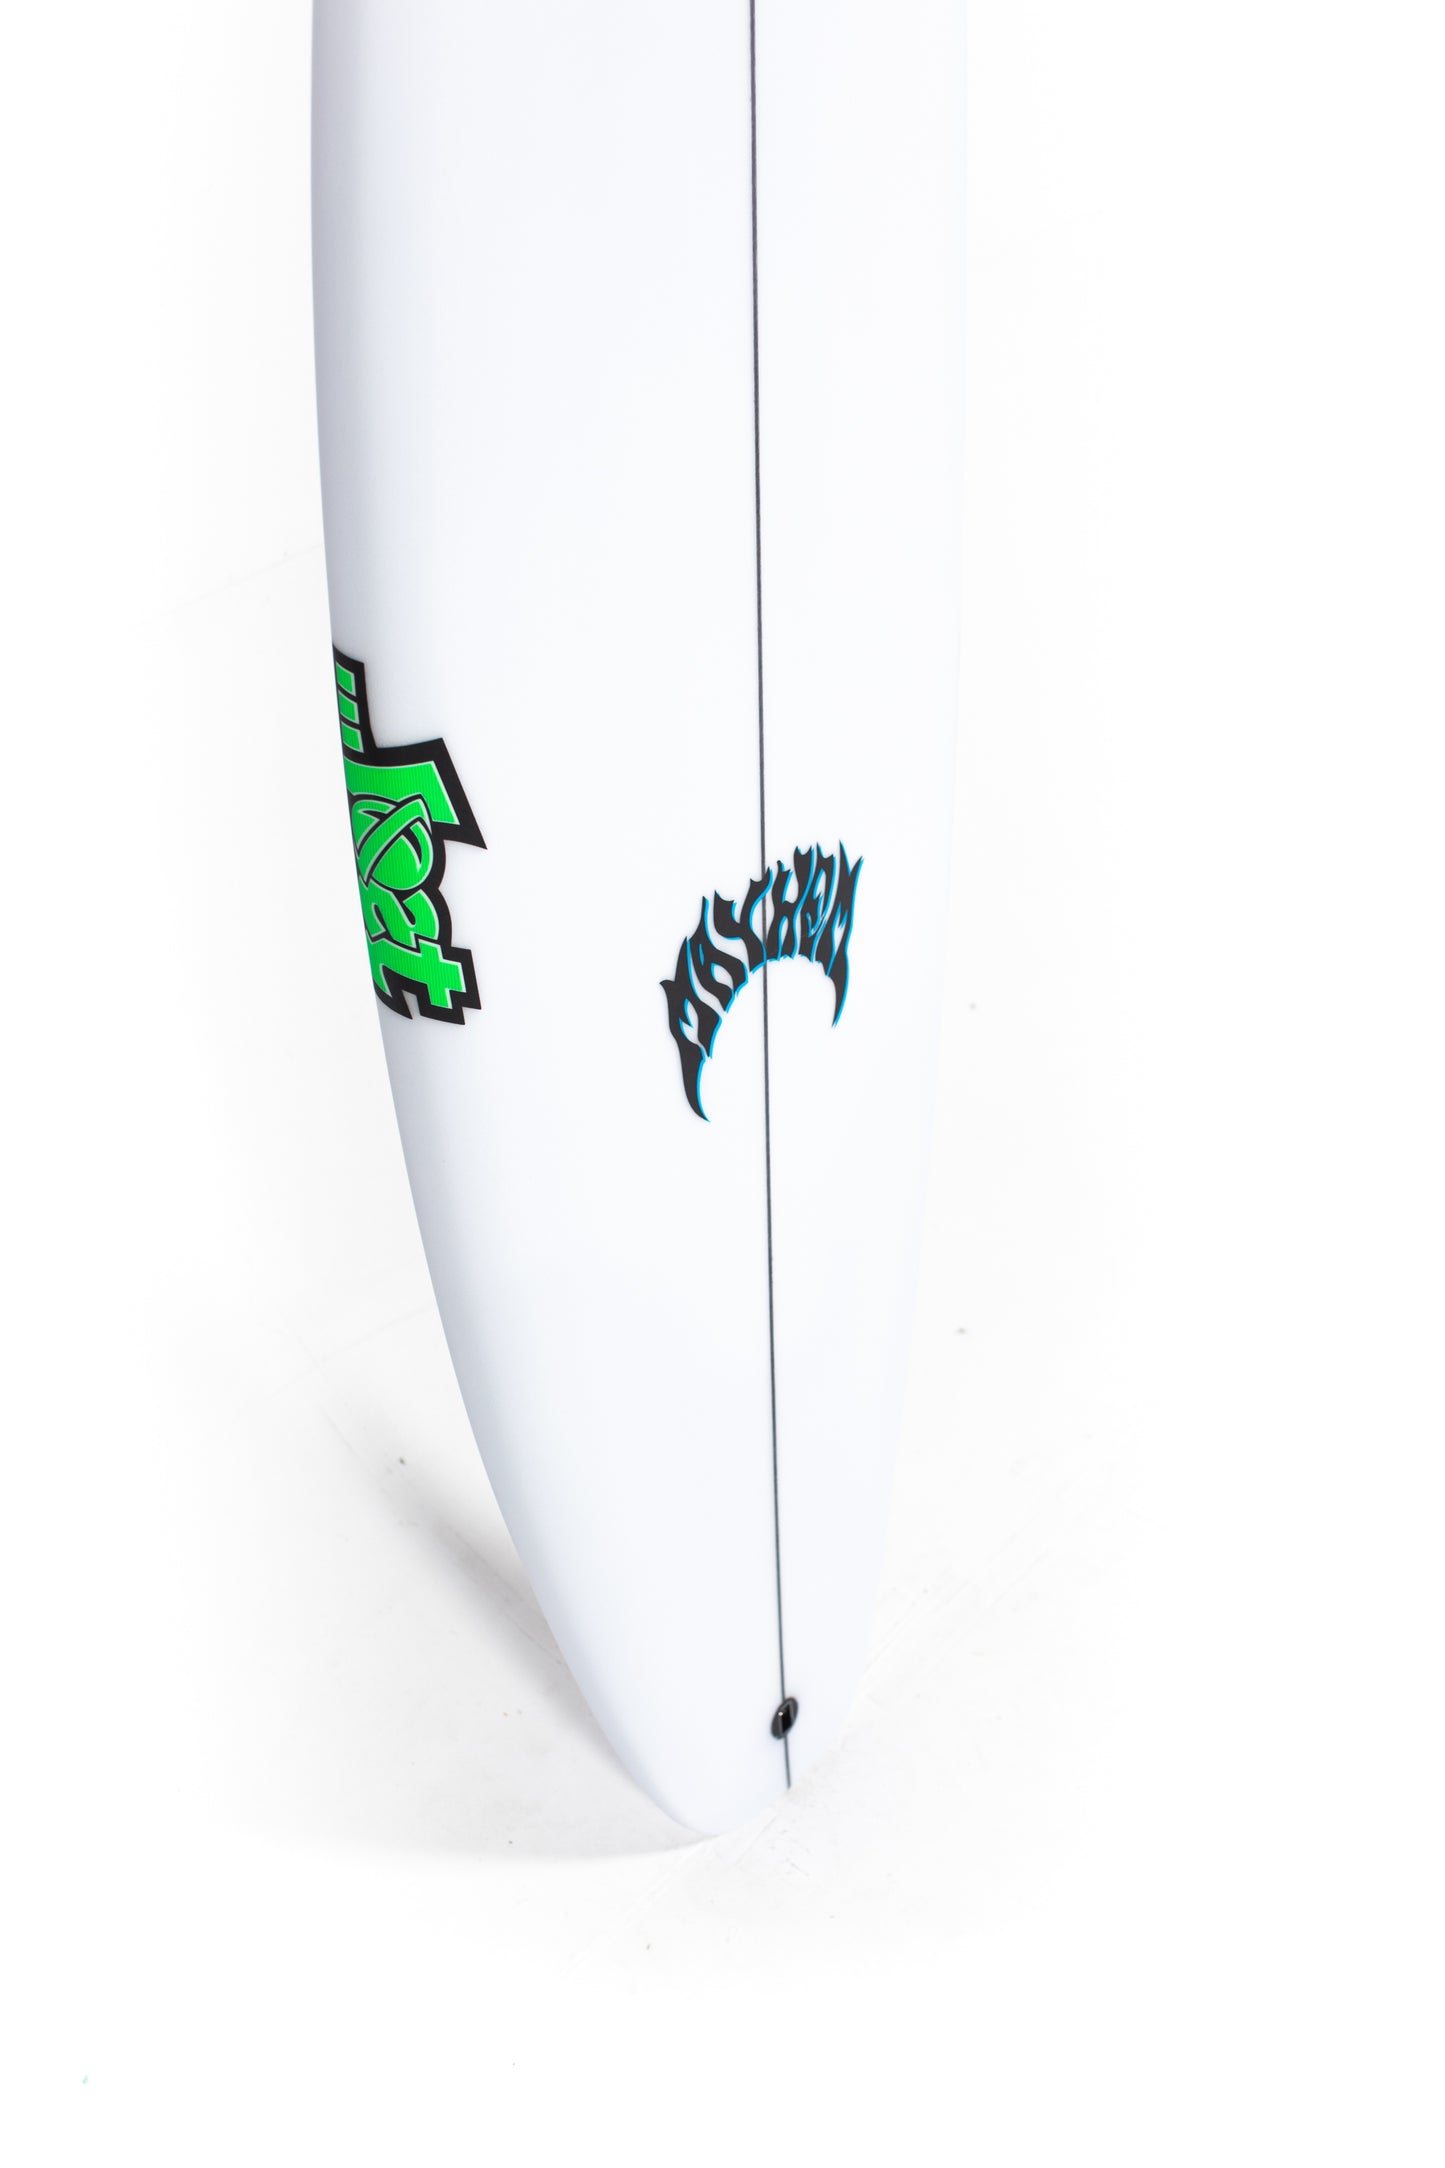 
                  
                    Pukas-Surf-Shop-Lost-Surfboards-3-0-Stub-Matt-Biolos-5_7
                  
                